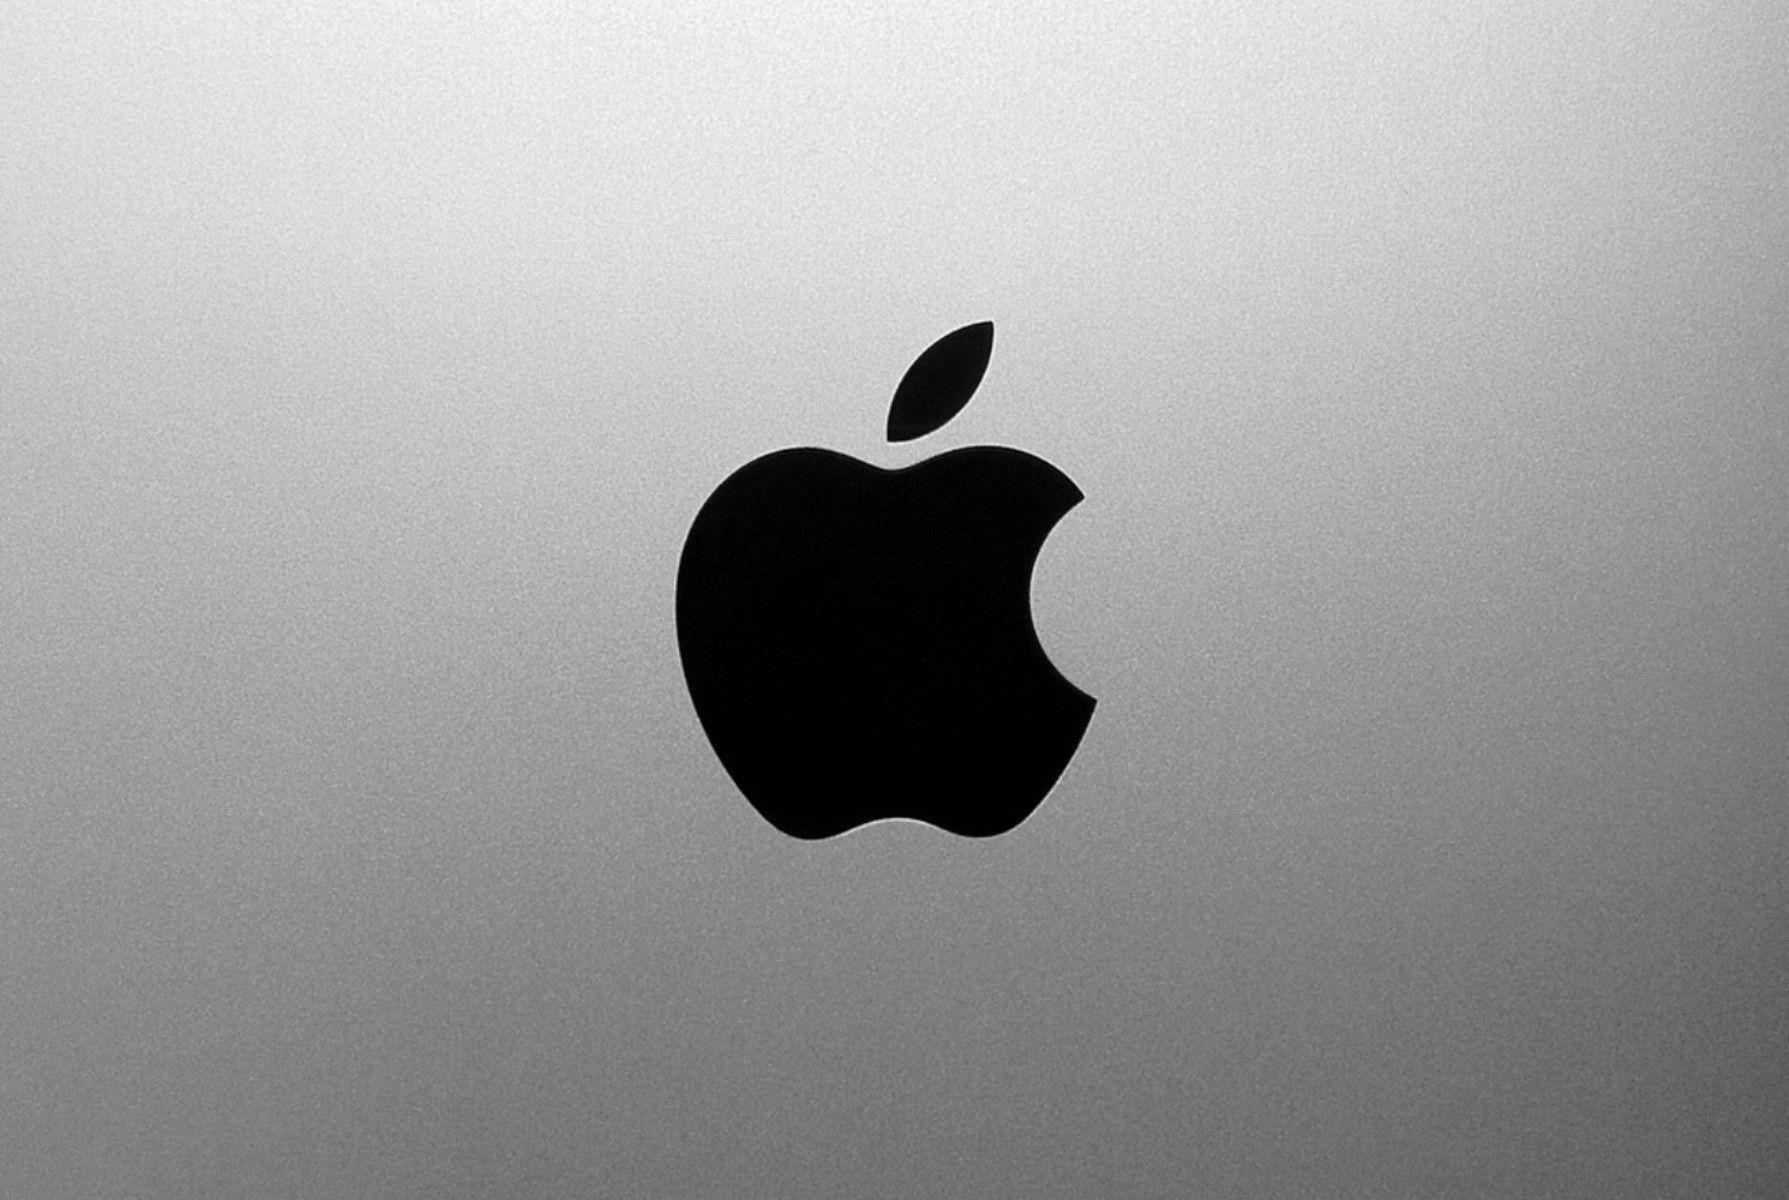 Apple شركة  12 يوليو 2021 9 التعليقات
Apple يهدد بريكست بعد نزاع بمليارات الدولارات على براءات الاختراع